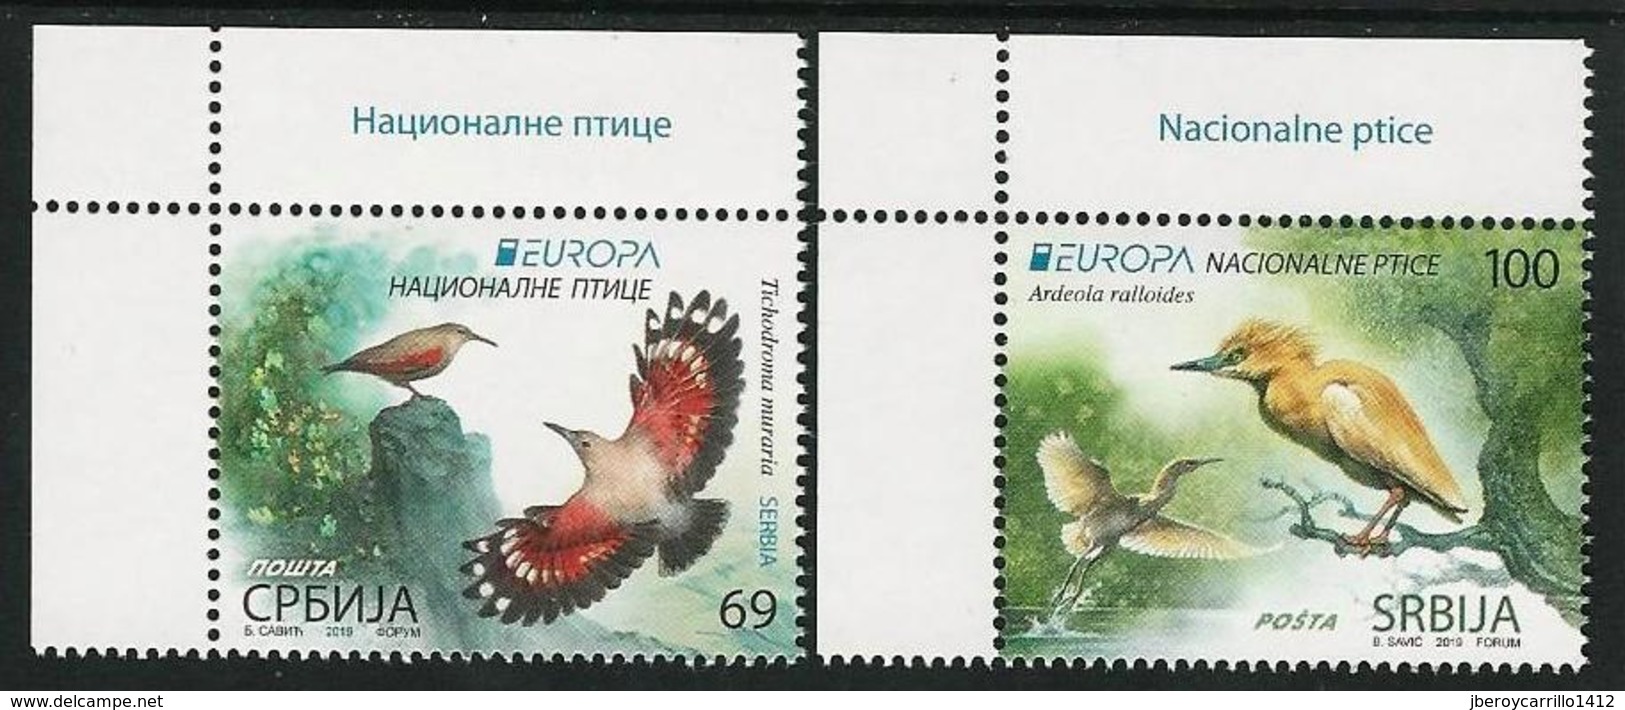 SERBIA /SERBIEN / SRBIJA  -EUROPA 2019 -NATIONAL BIRDS.-"AVES -BIRDS -VÖGEL-OISEAUX"- SERIE CH - A - 2019